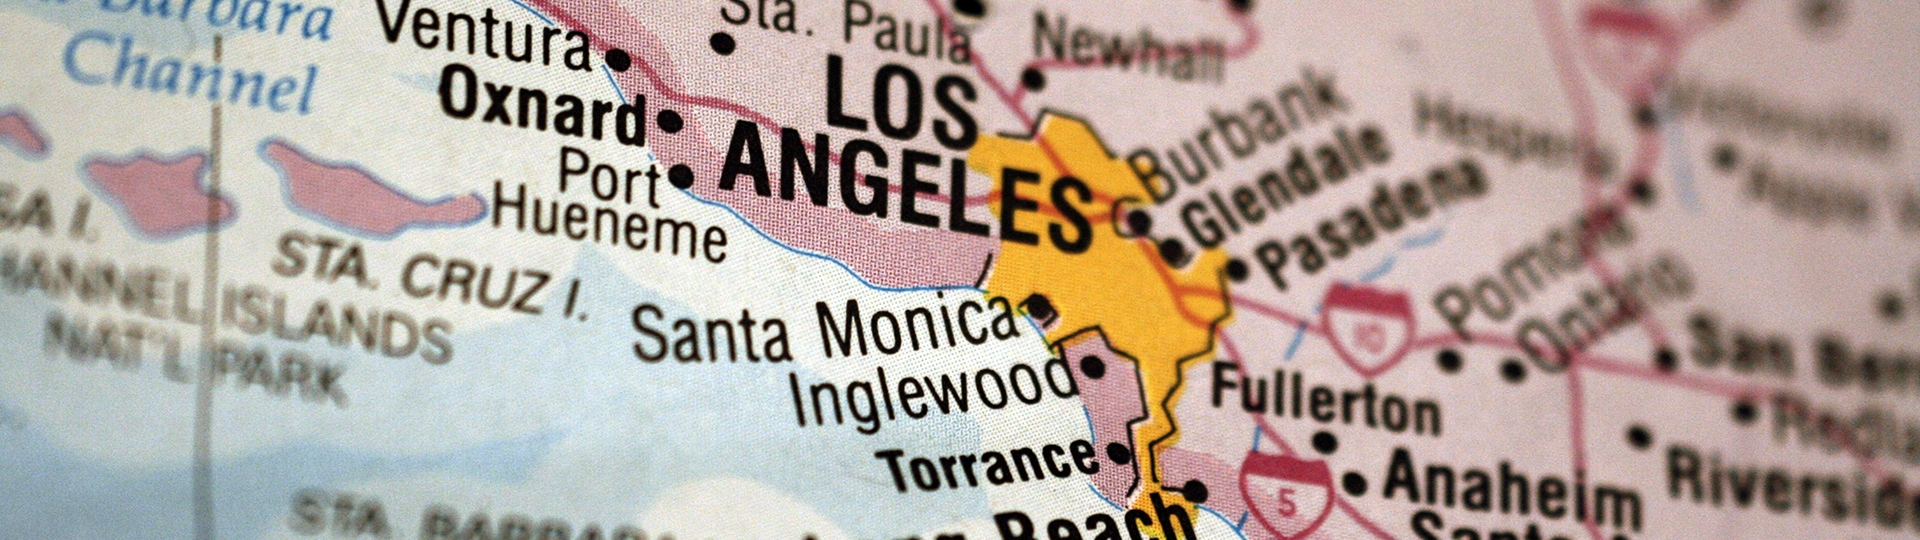 បដារូបភាពផែនទីបង្ហាញទីតាំងខោនធី Los Angeles County ដែលគូសបញ្ជាក់ពីទីក្រុង Los Angeles និងទីតាំងដែលនៅជំវិញទីក្រុង។